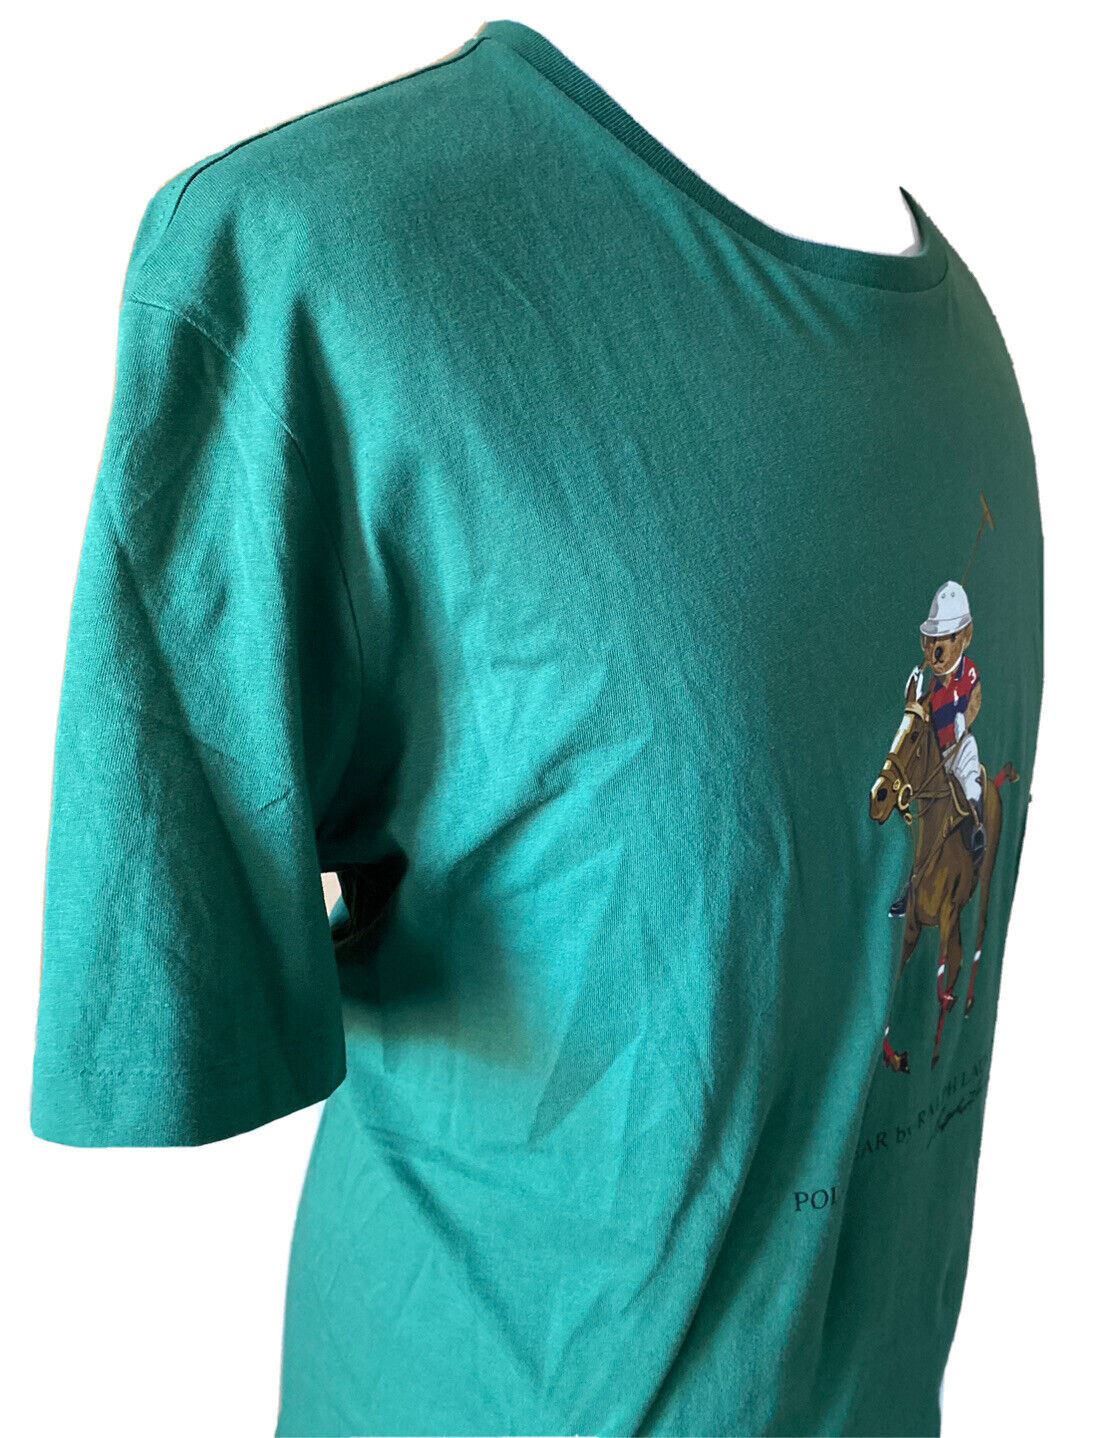 Neu mit Etikett: Polo Ralph Lauren Bären-T-Shirt, Grün, XL/TG